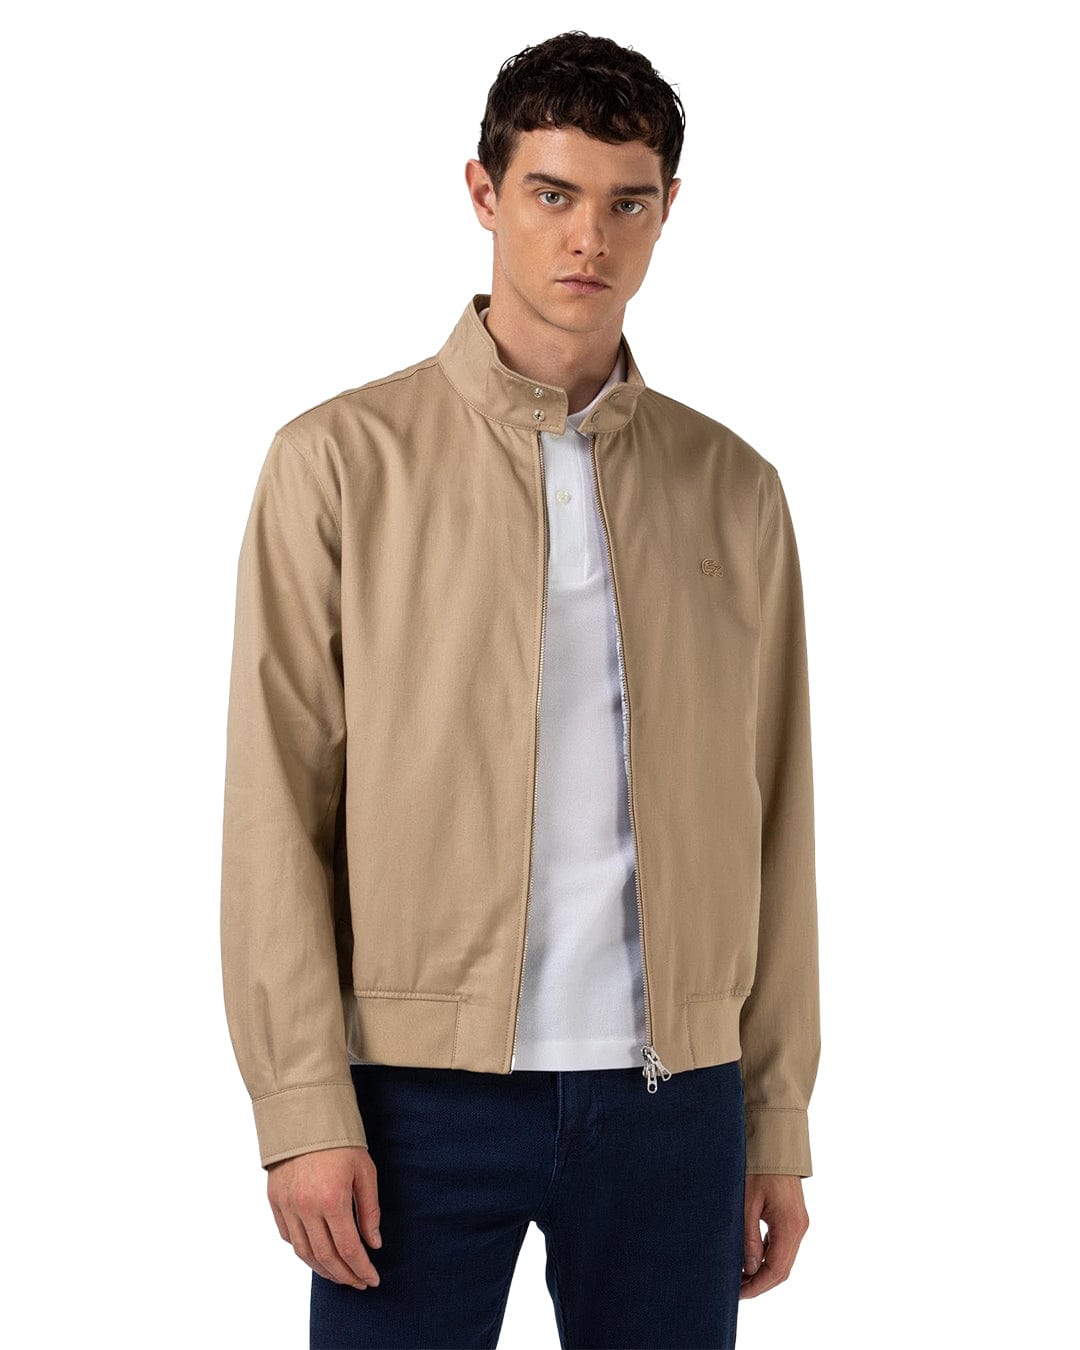 Lacoste Outerwear Lacoste Beige Lightweight Cotton Jacket